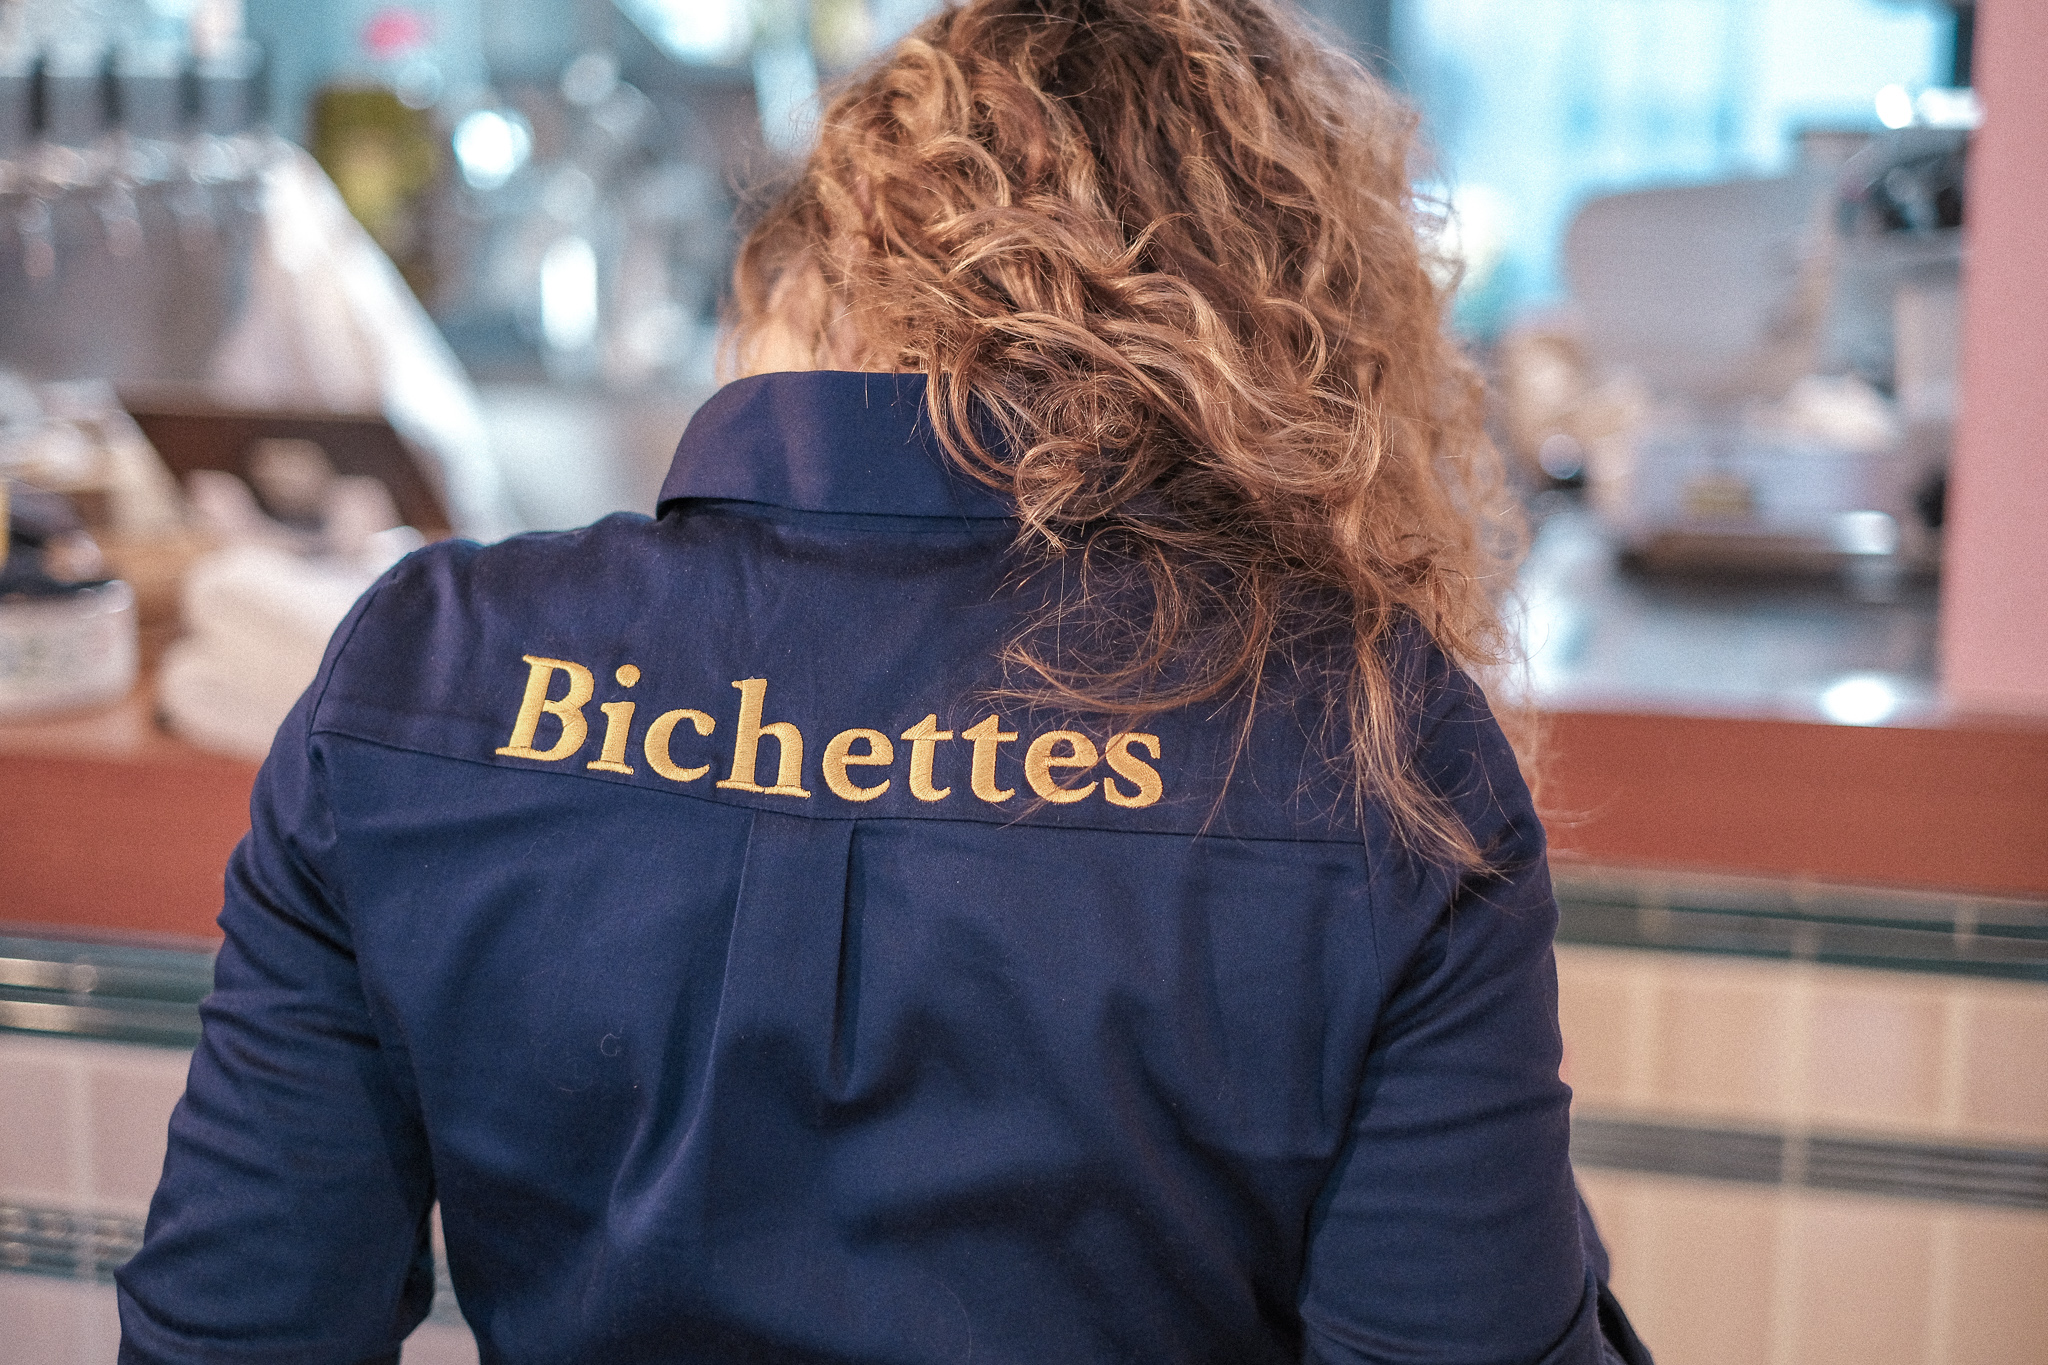 xioute Bichettes restaurant